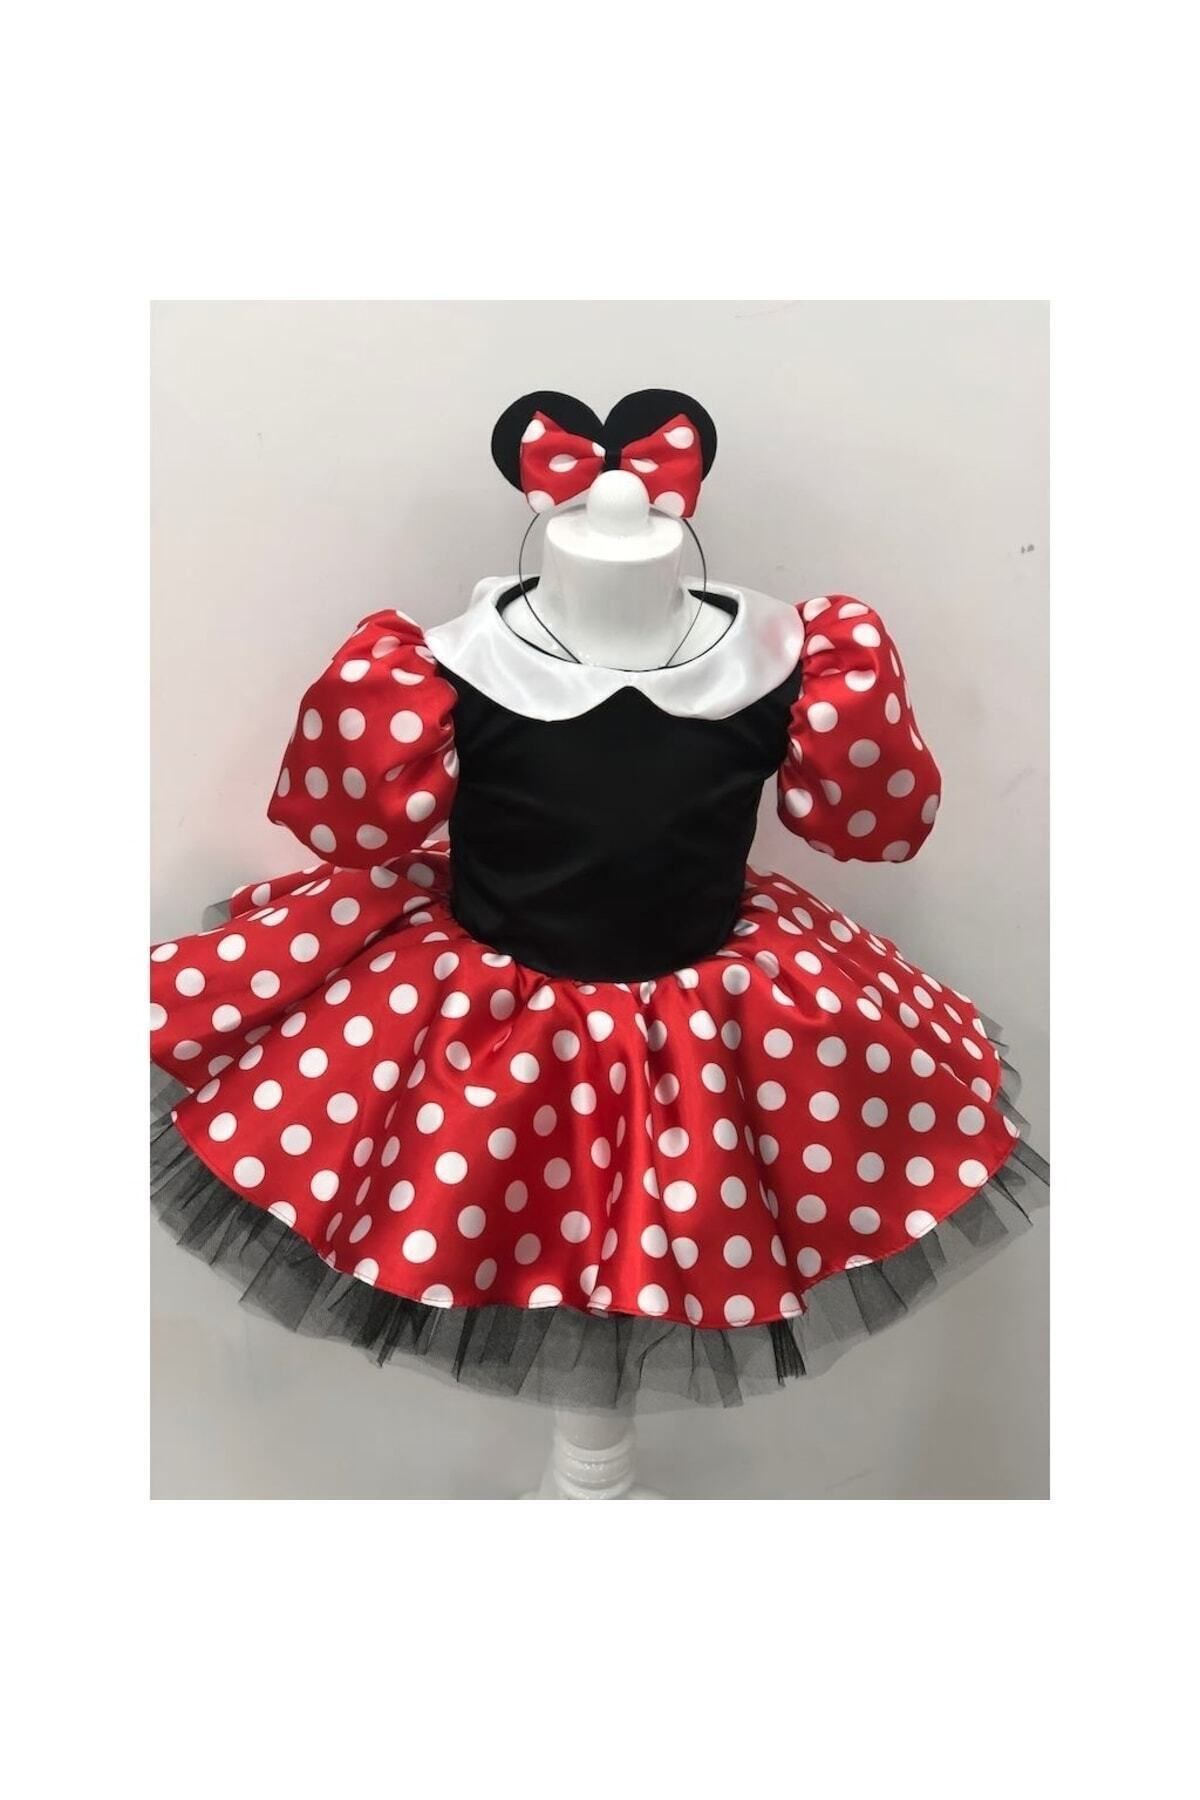 YAĞMUR KOStütüM Minnie Mouse Kız Çocuk Doğumgünü Elbisesi & Parti Kostümü